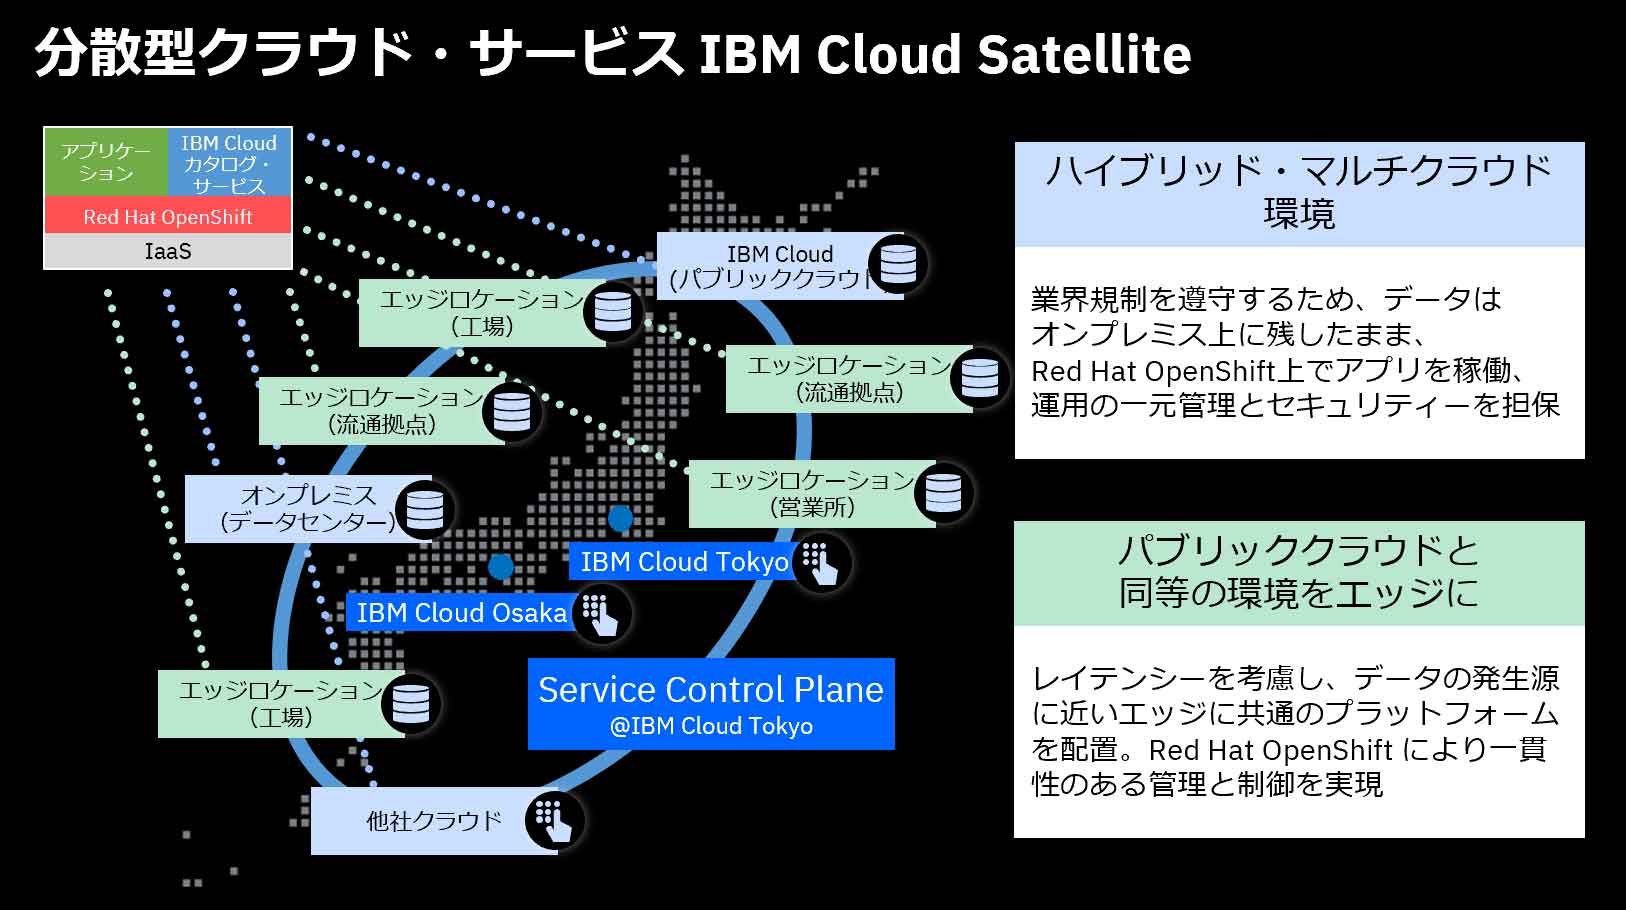 待望の大阪リージョンが始動 Power Systems Linuxoneのマネージド サービスなど Ibm Cloudの最新トピックをご紹介 Ibm ソリューション ブログ